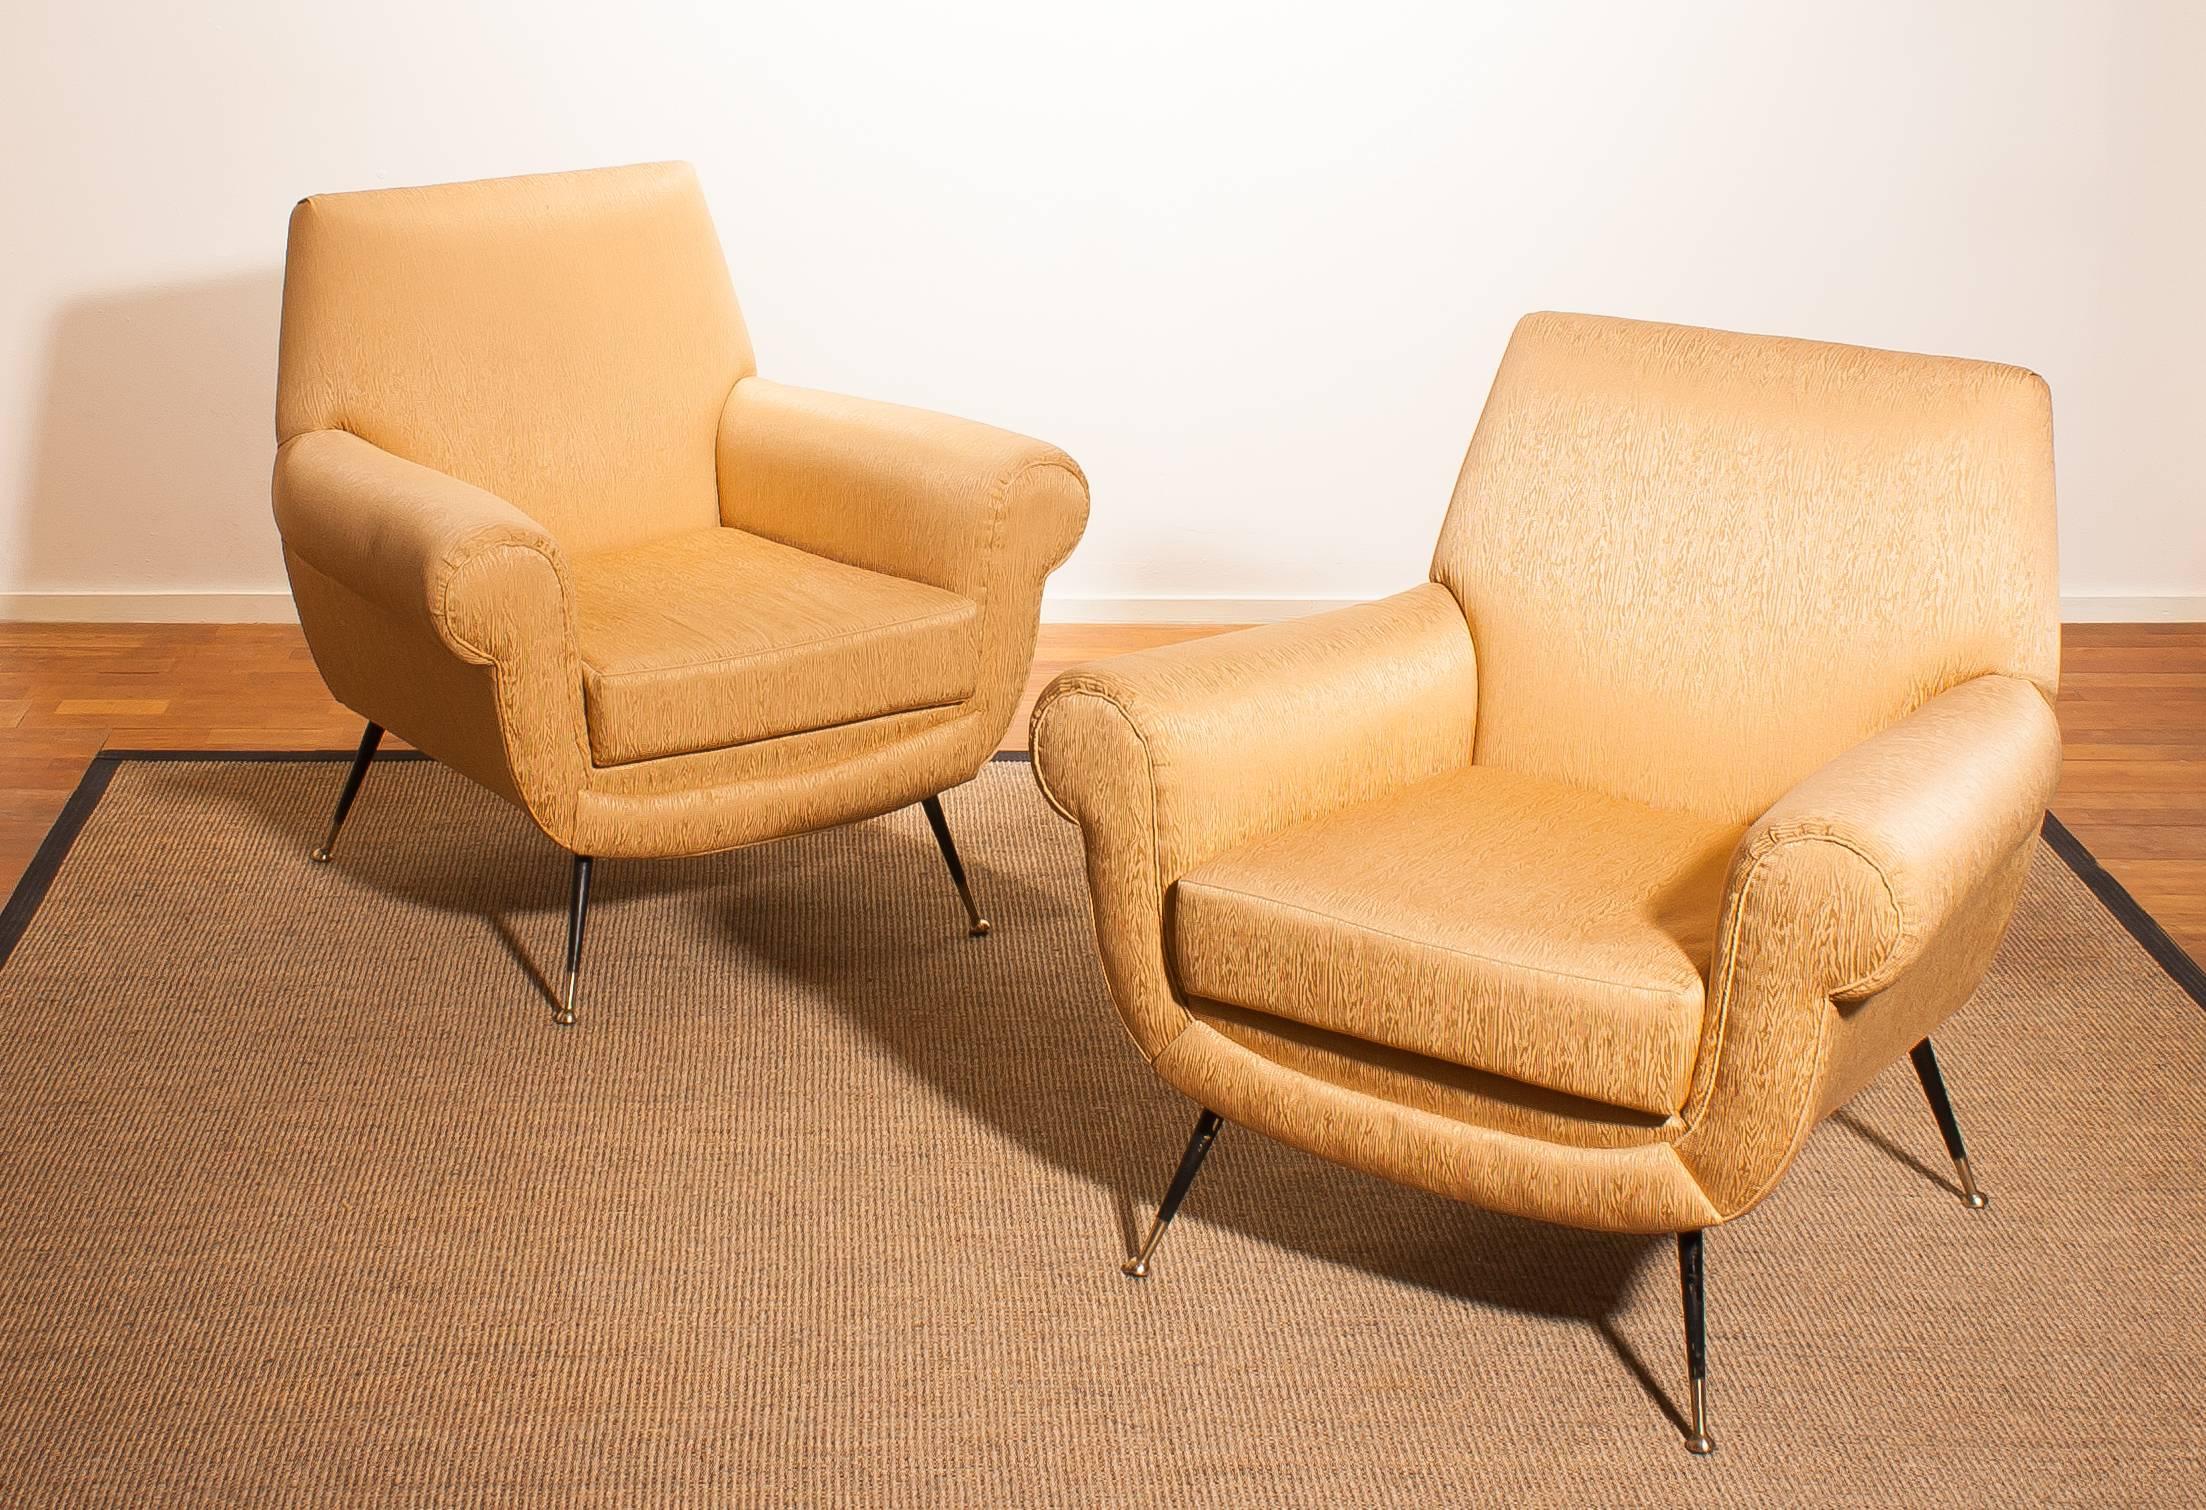 Golden Jacquard Upholstered Easy Chairs by Gigi Radice for Minotti, Brass Legs. 1